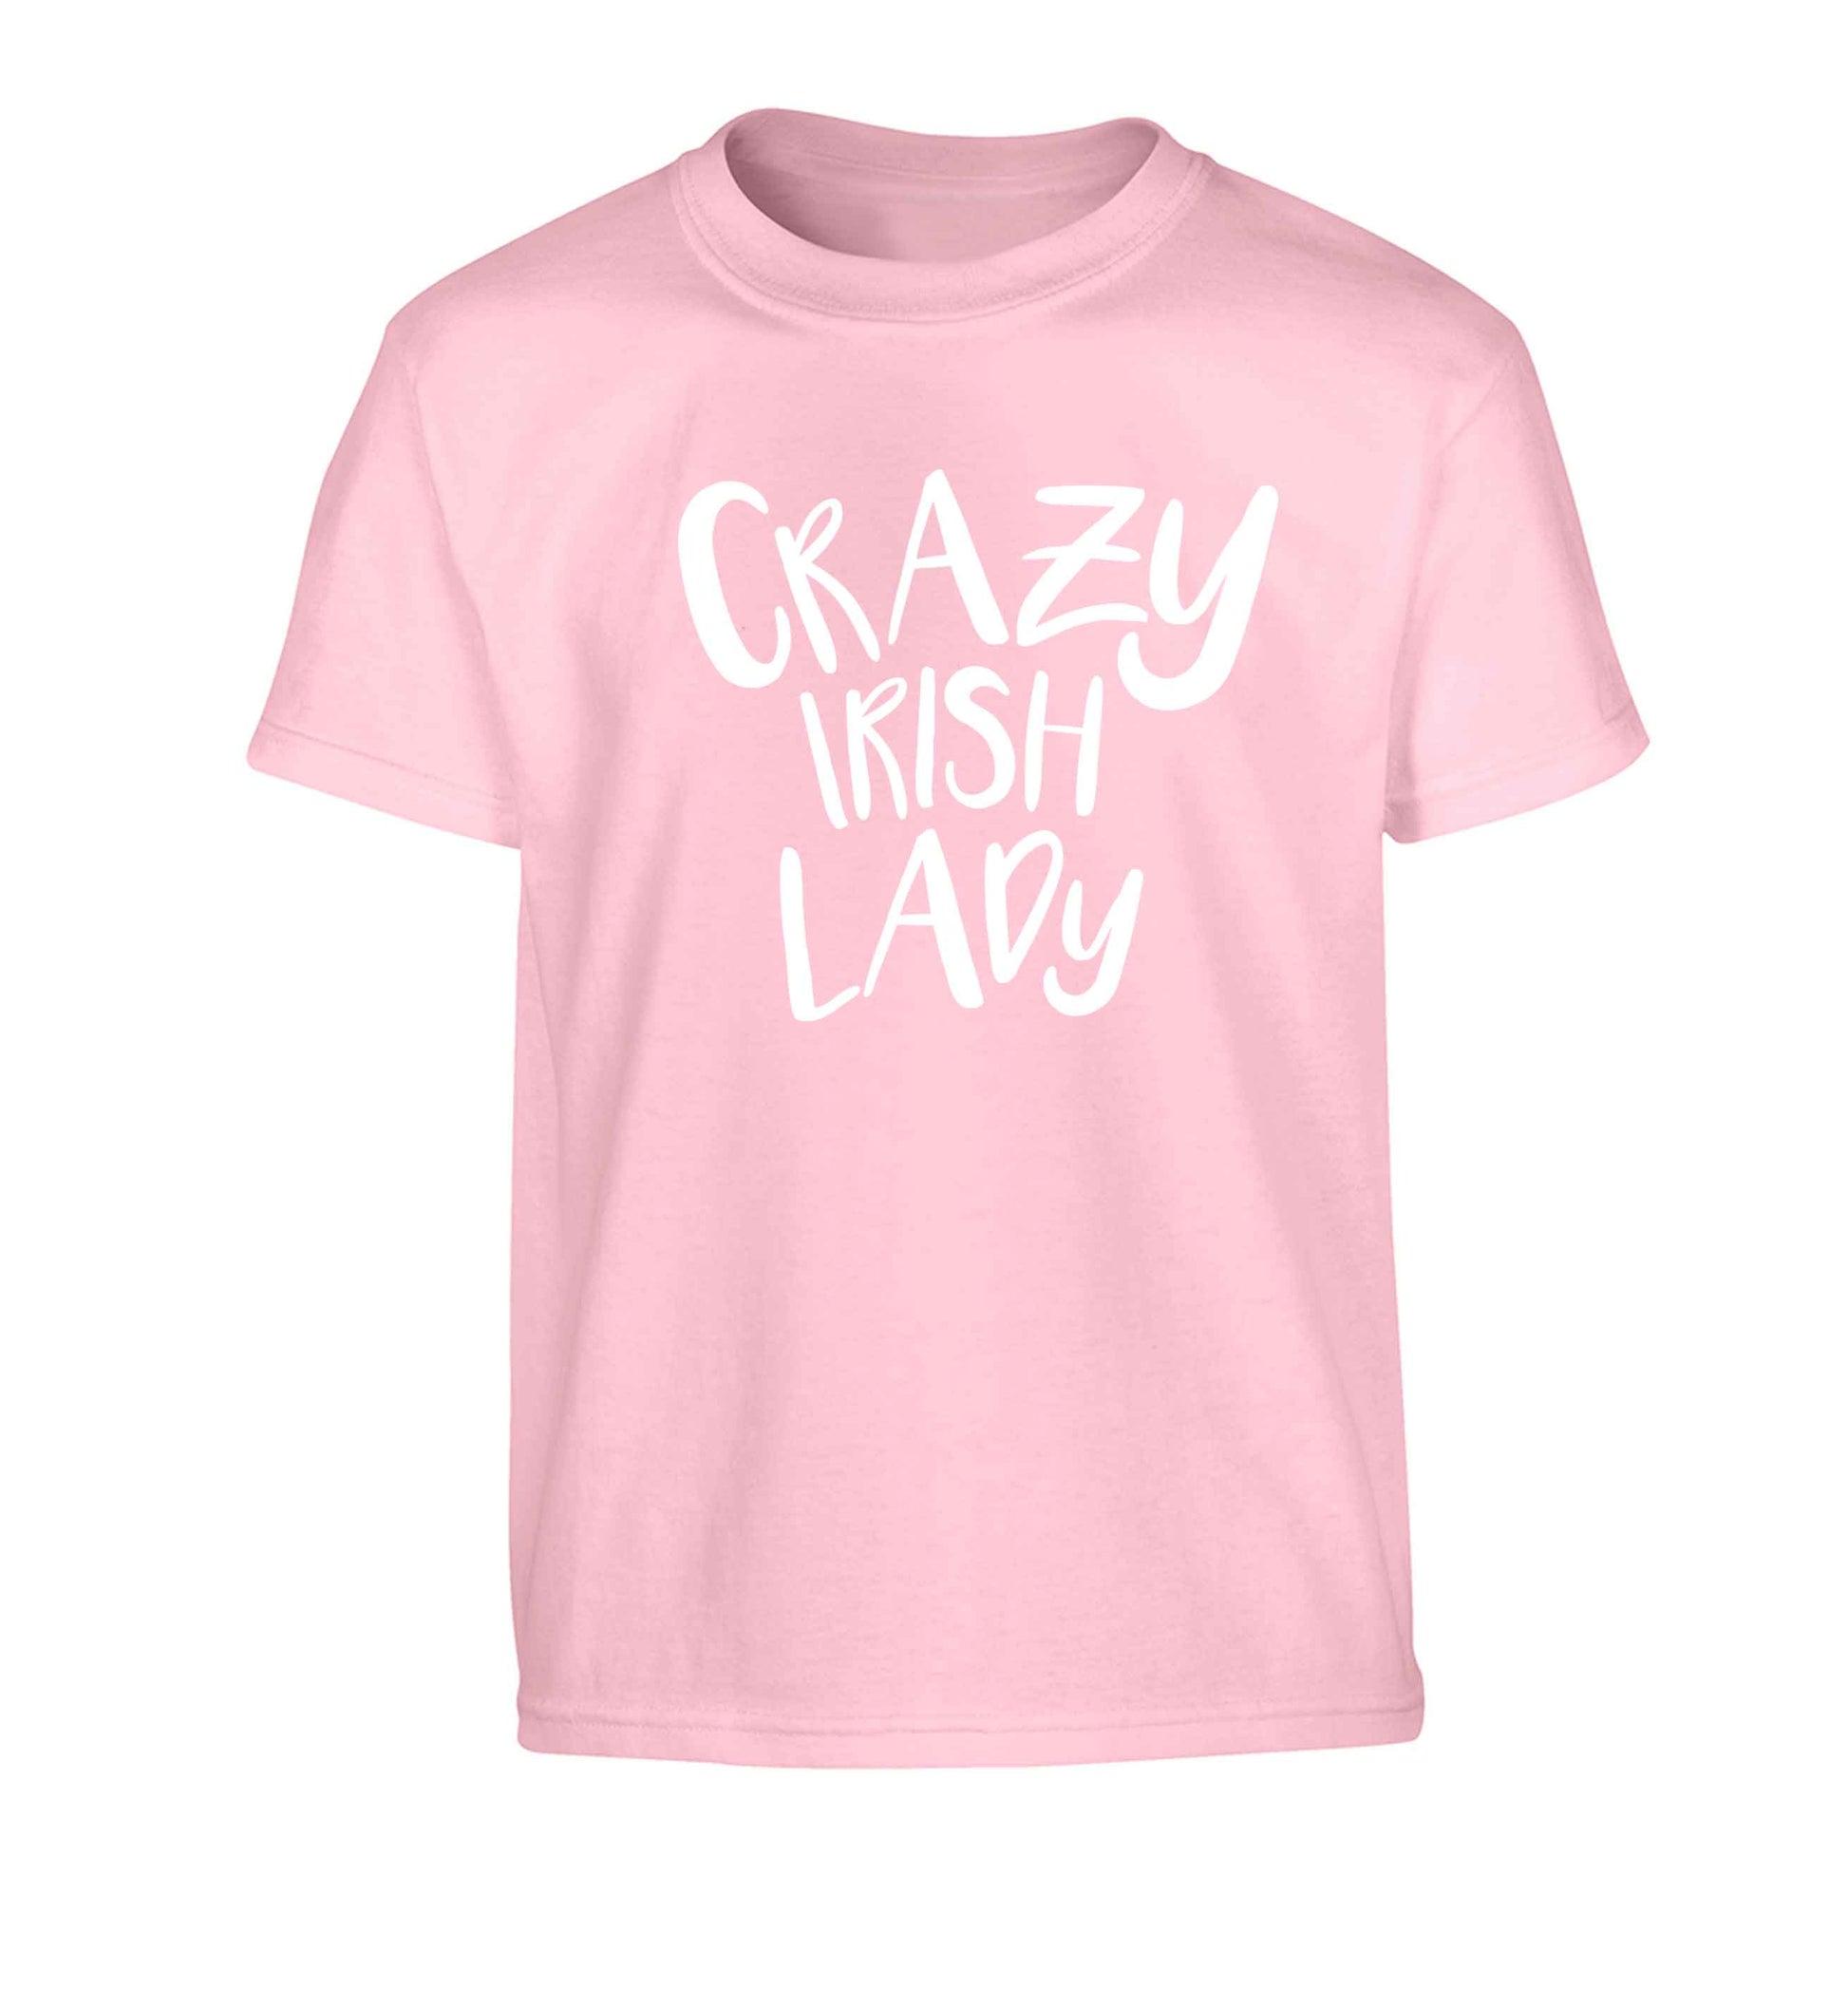 Crazy Irish lady Children's light pink Tshirt 12-13 Years